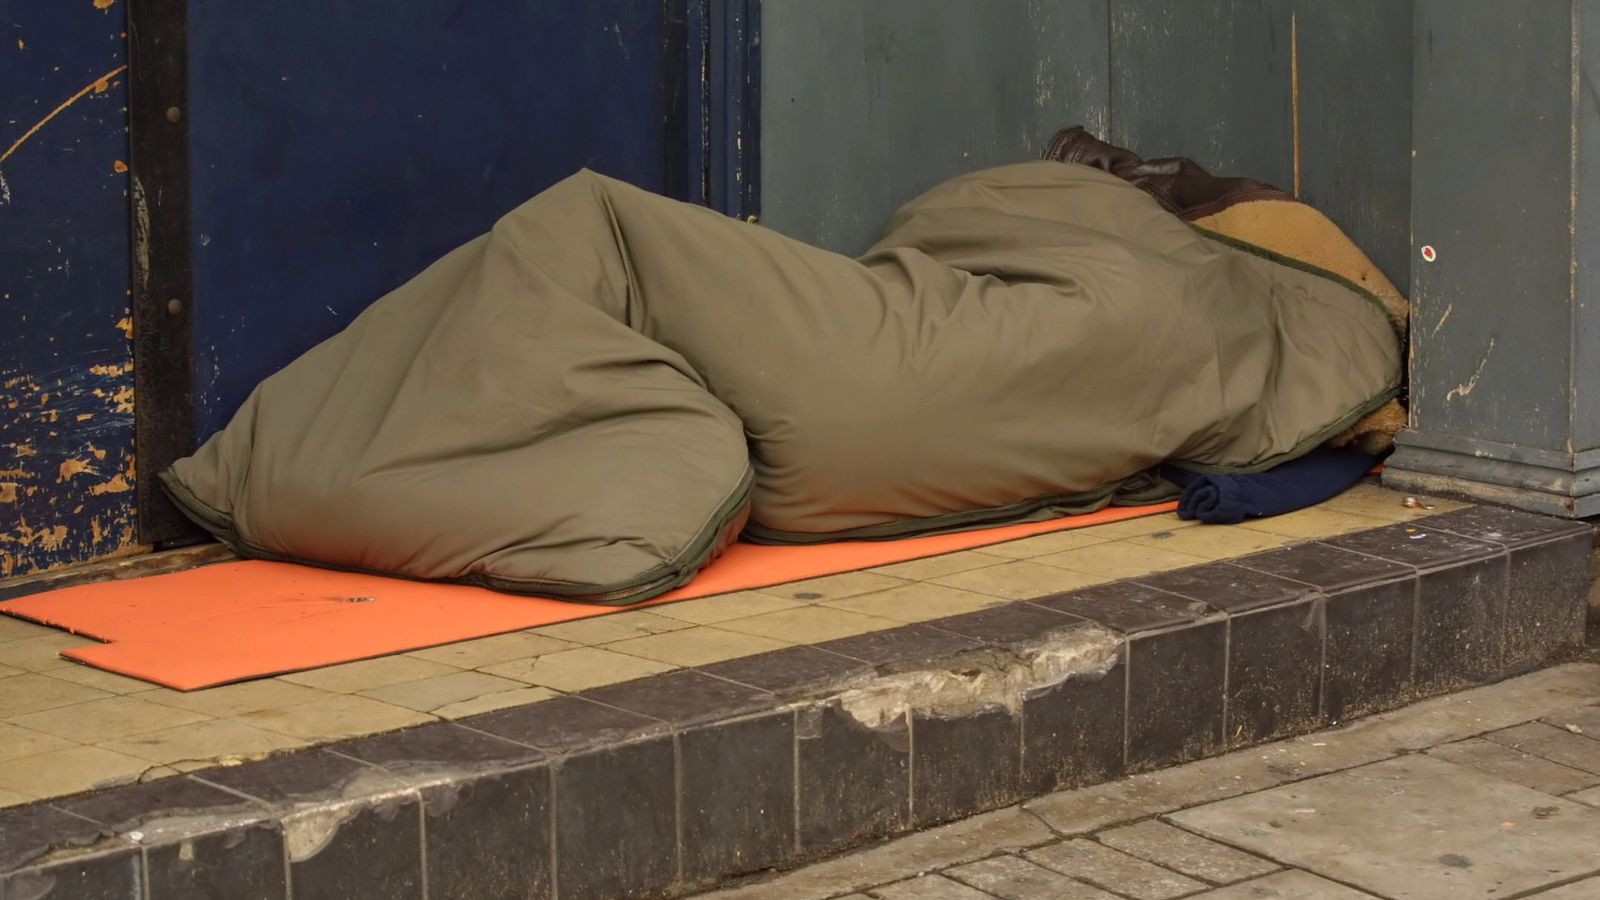 Министрите се отказват от плановете си да „криминализират“ бездомността след реакция – но благотворителните организации предупреждават, че грубо спящите все още ще бъдат насочени